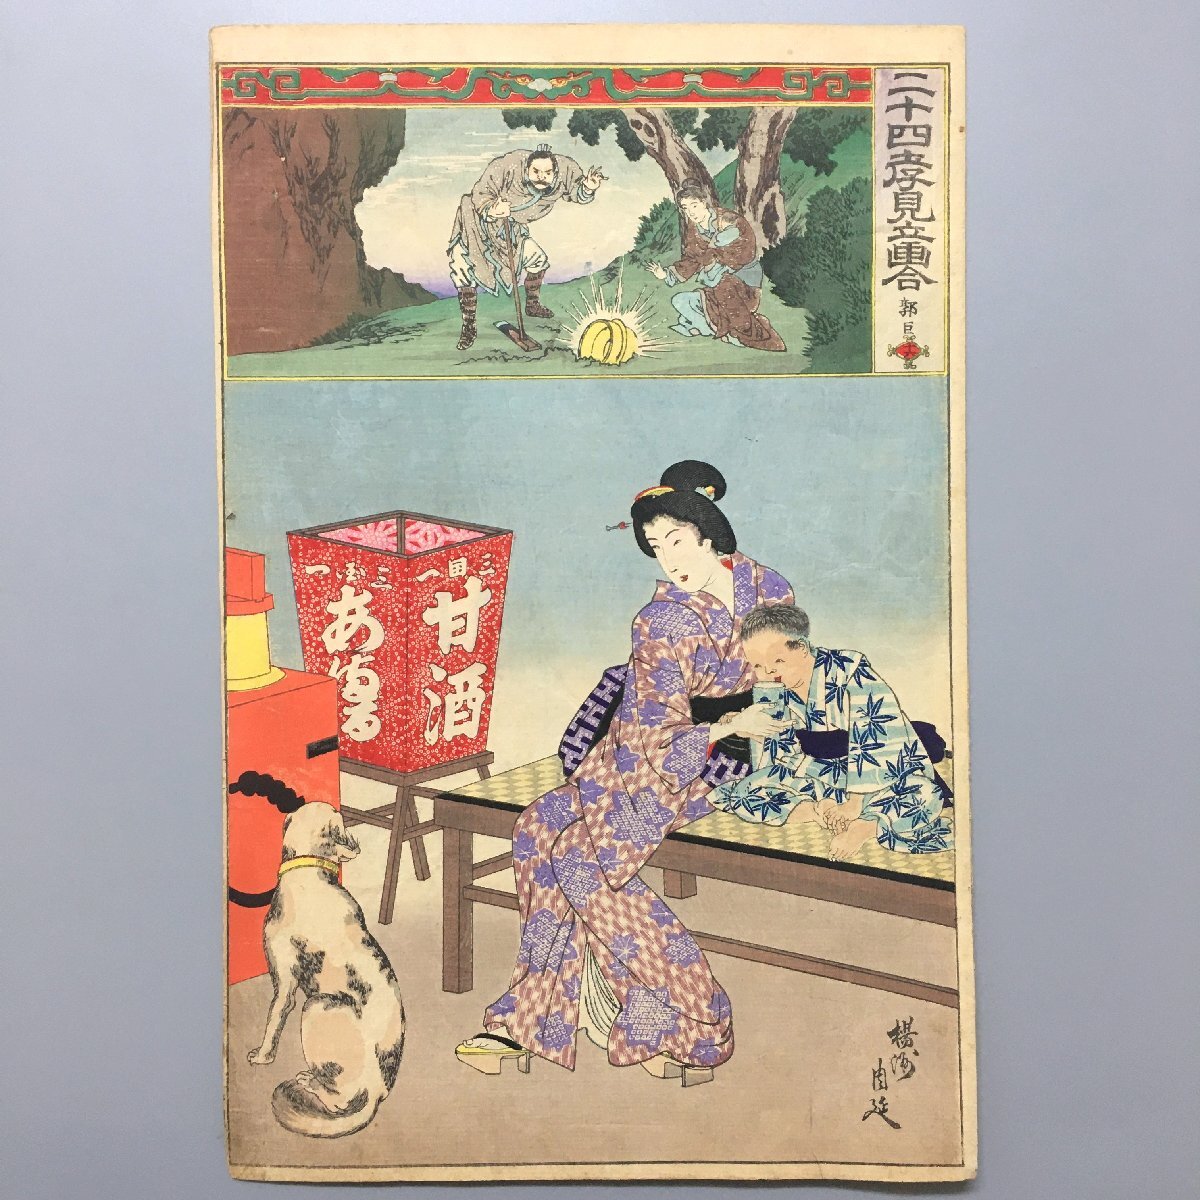 Двадцать четыре стоячие картины Таками, Восемнадцатый Цяньлу Яншу Шунобу, Мэйдзи 23, Нисики-э, укиё-э большого формата, гравюра на дереве, собака, рисование, Укиё-э, Распечатать, Красивая женщина рисует